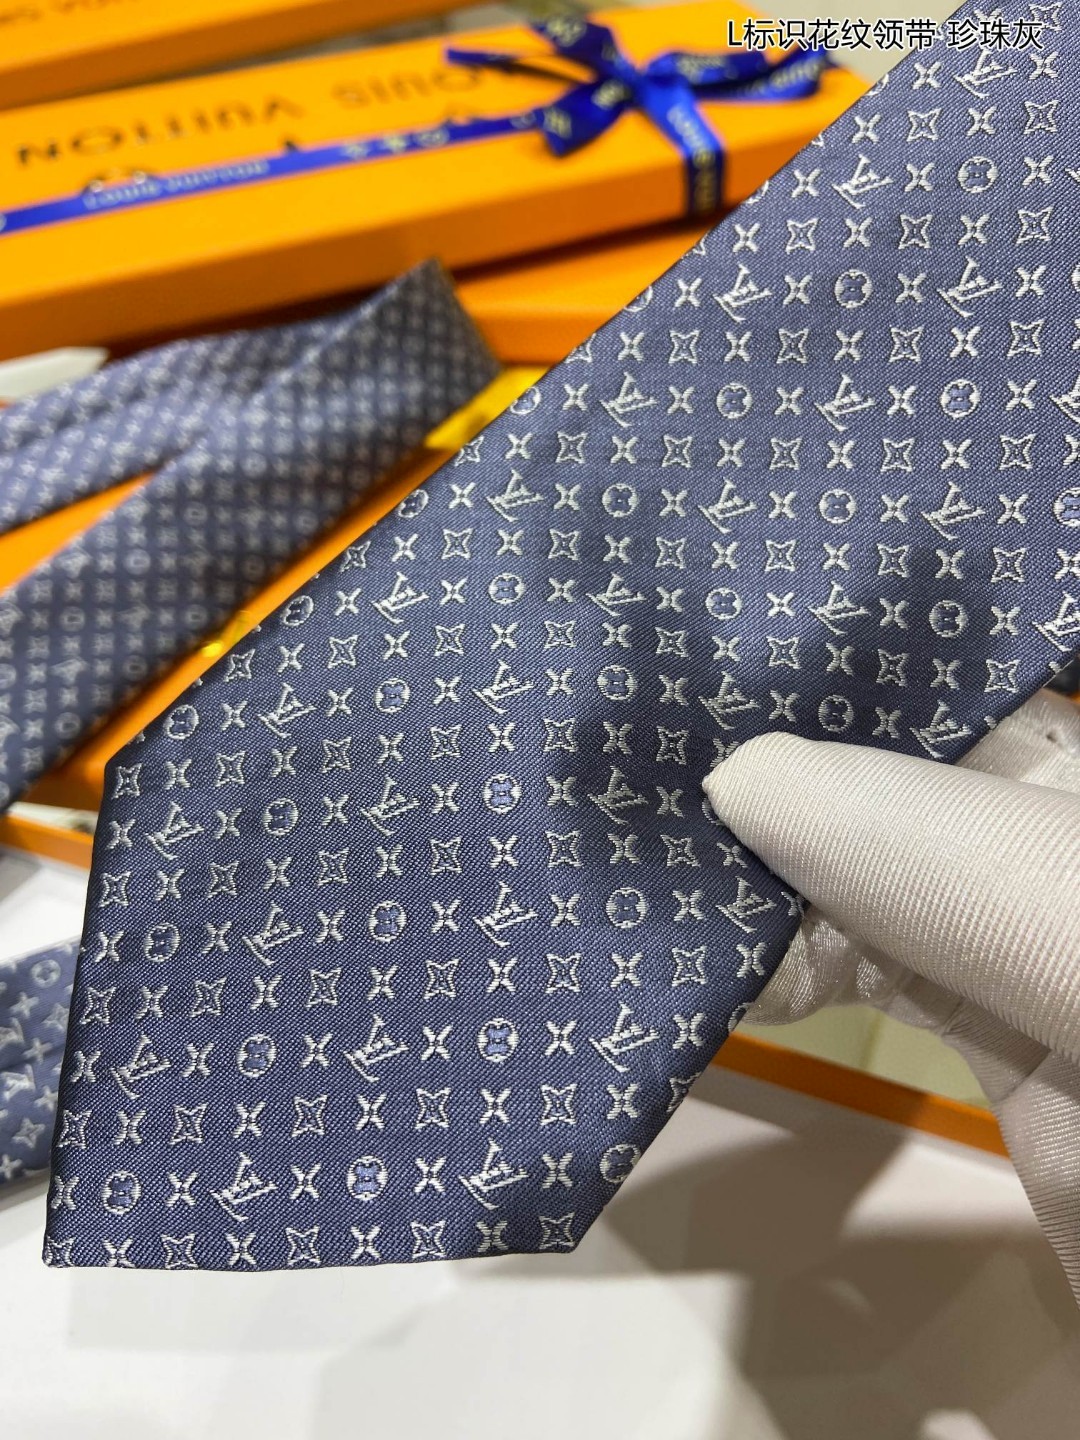 男士领带系列L标识花纹领带稀有MonogramClassic领带将经典路易威登风格与精细做工有机结合斑点